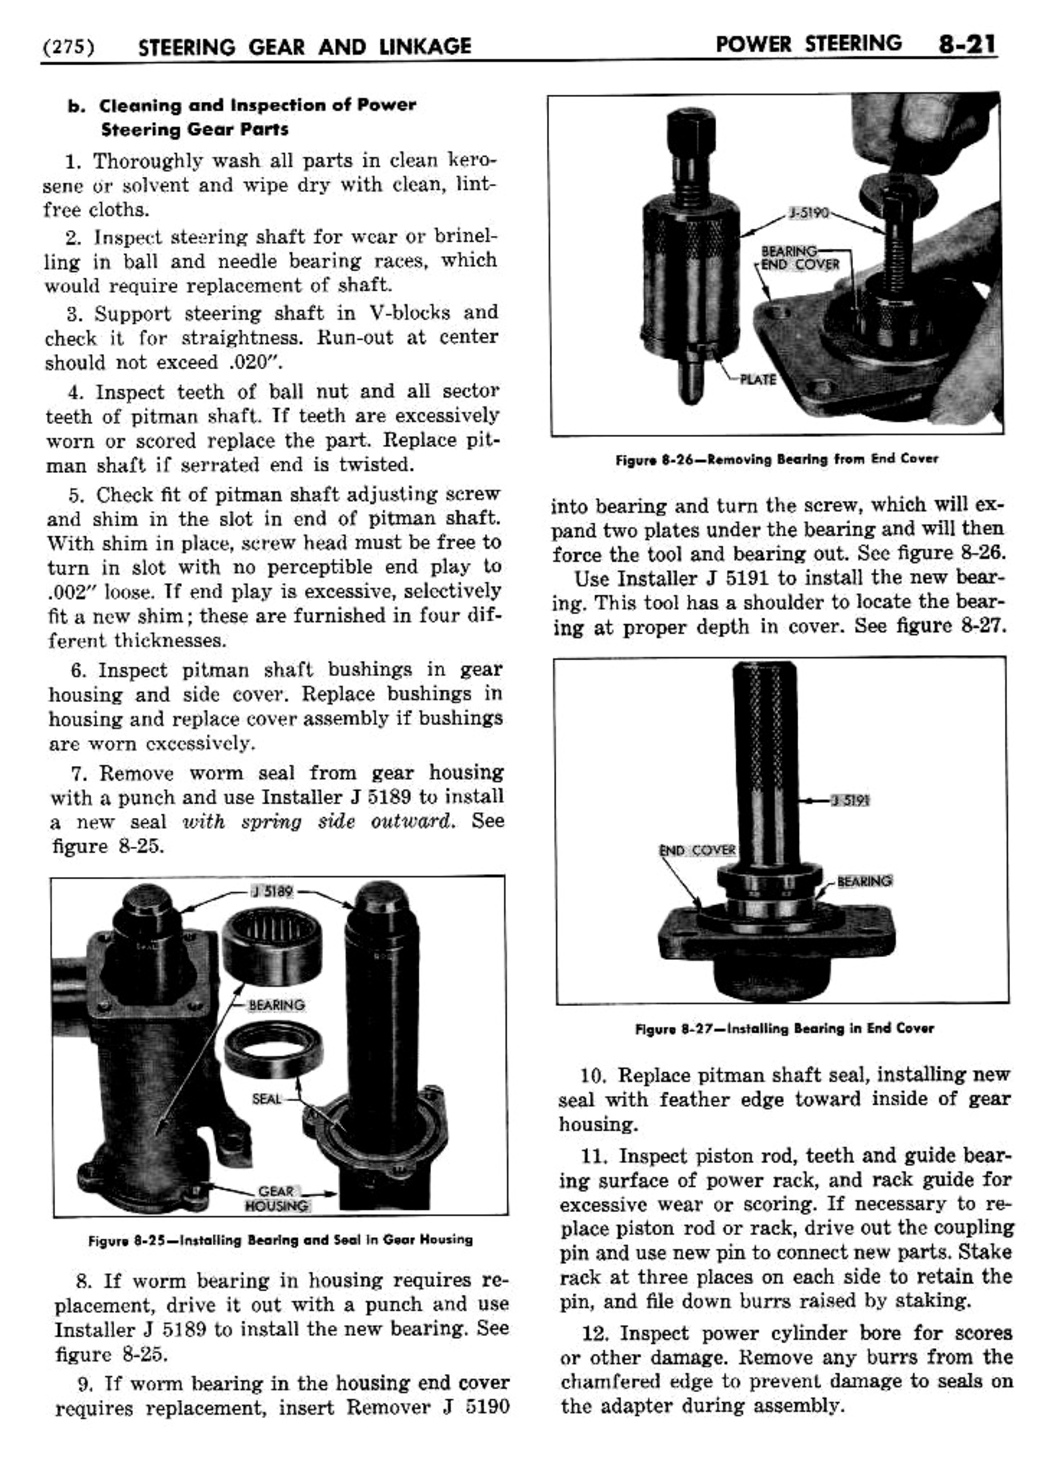 n_09 1954 Buick Shop Manual - Steering-021-021.jpg